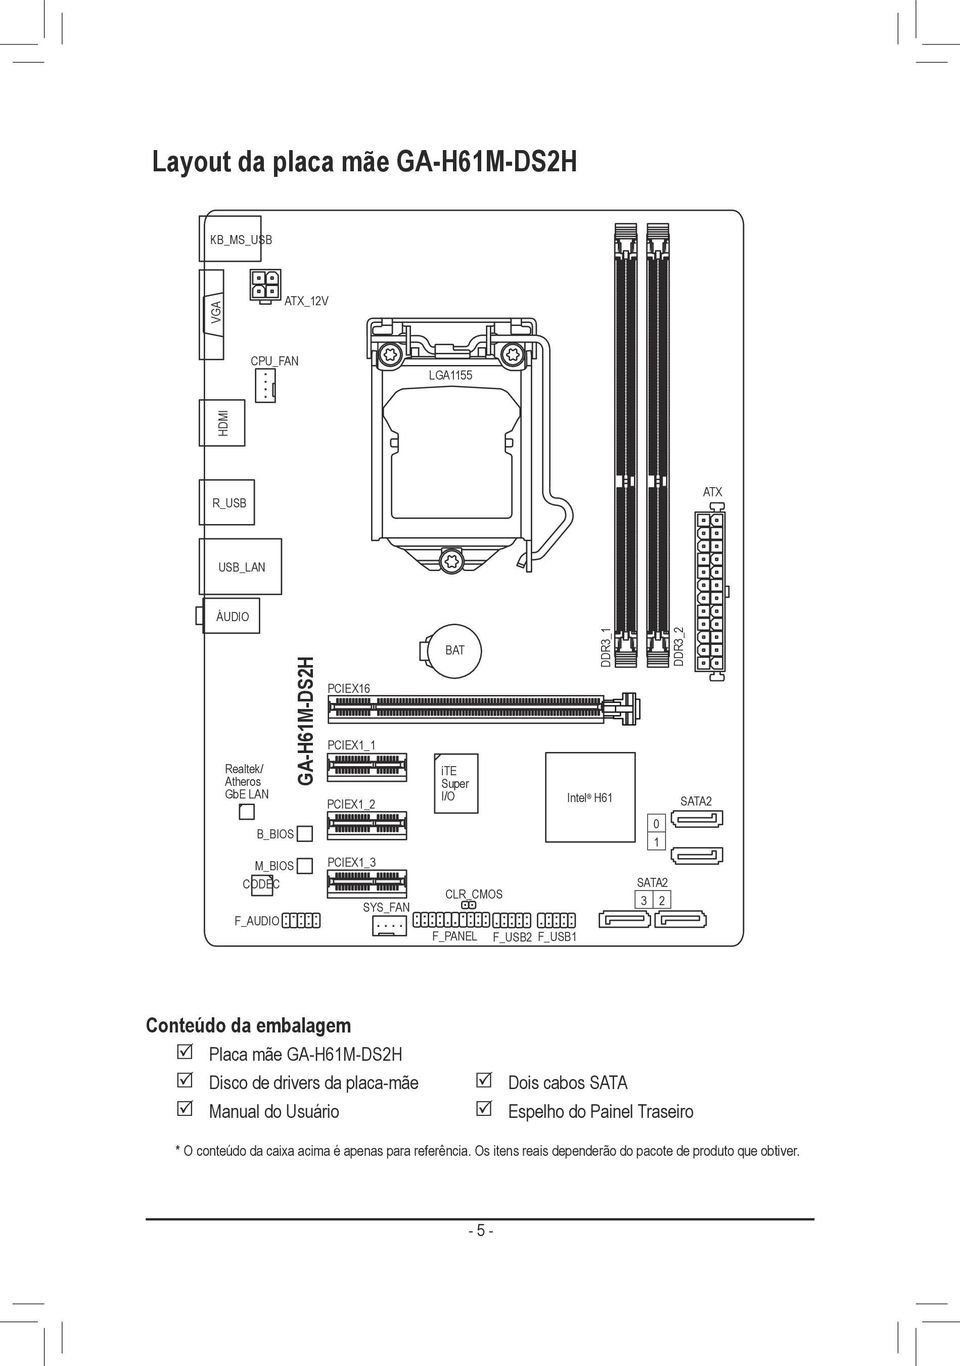 F_USB2 F_USB1 SATA2 3 2 Conteúdo da embalagem Placa mãe GA-H61M-DS2H Disco de drivers da placa-mãe Manual do Usuário Dois cabos SATA